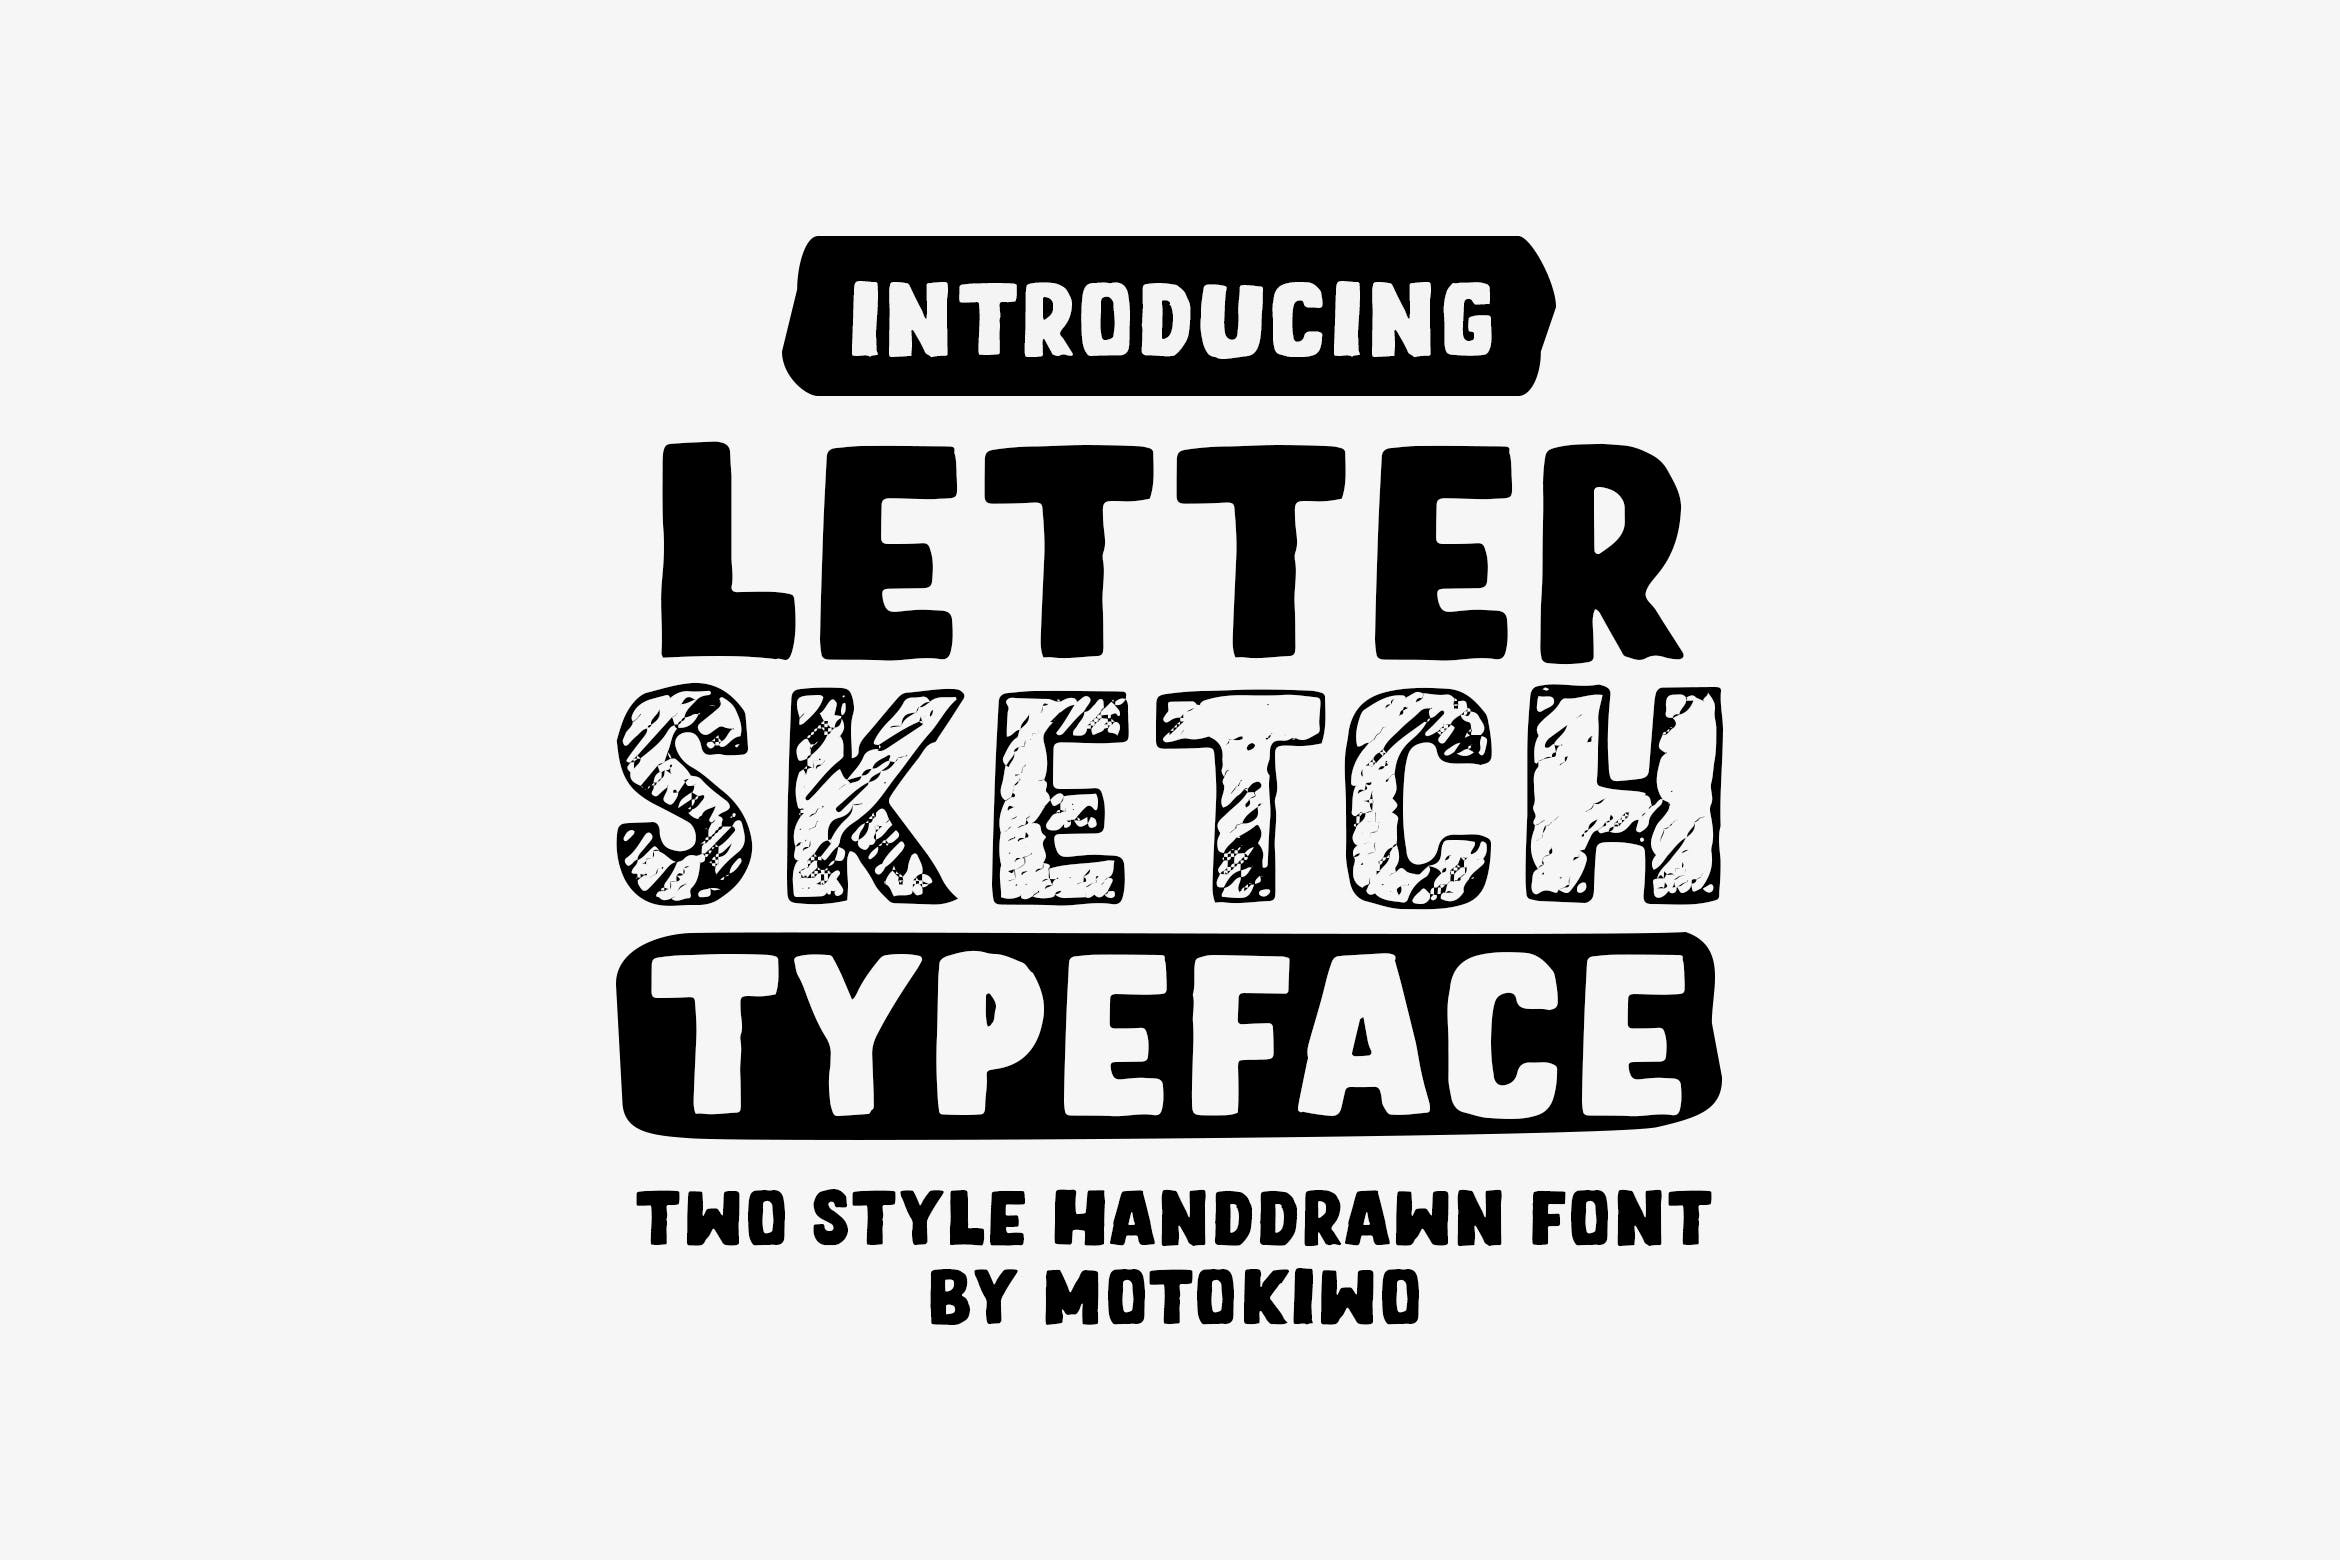 铅笔素描风格＆实心填充英文无衬线字体第一素材精选 Letter Sketch Typeface插图